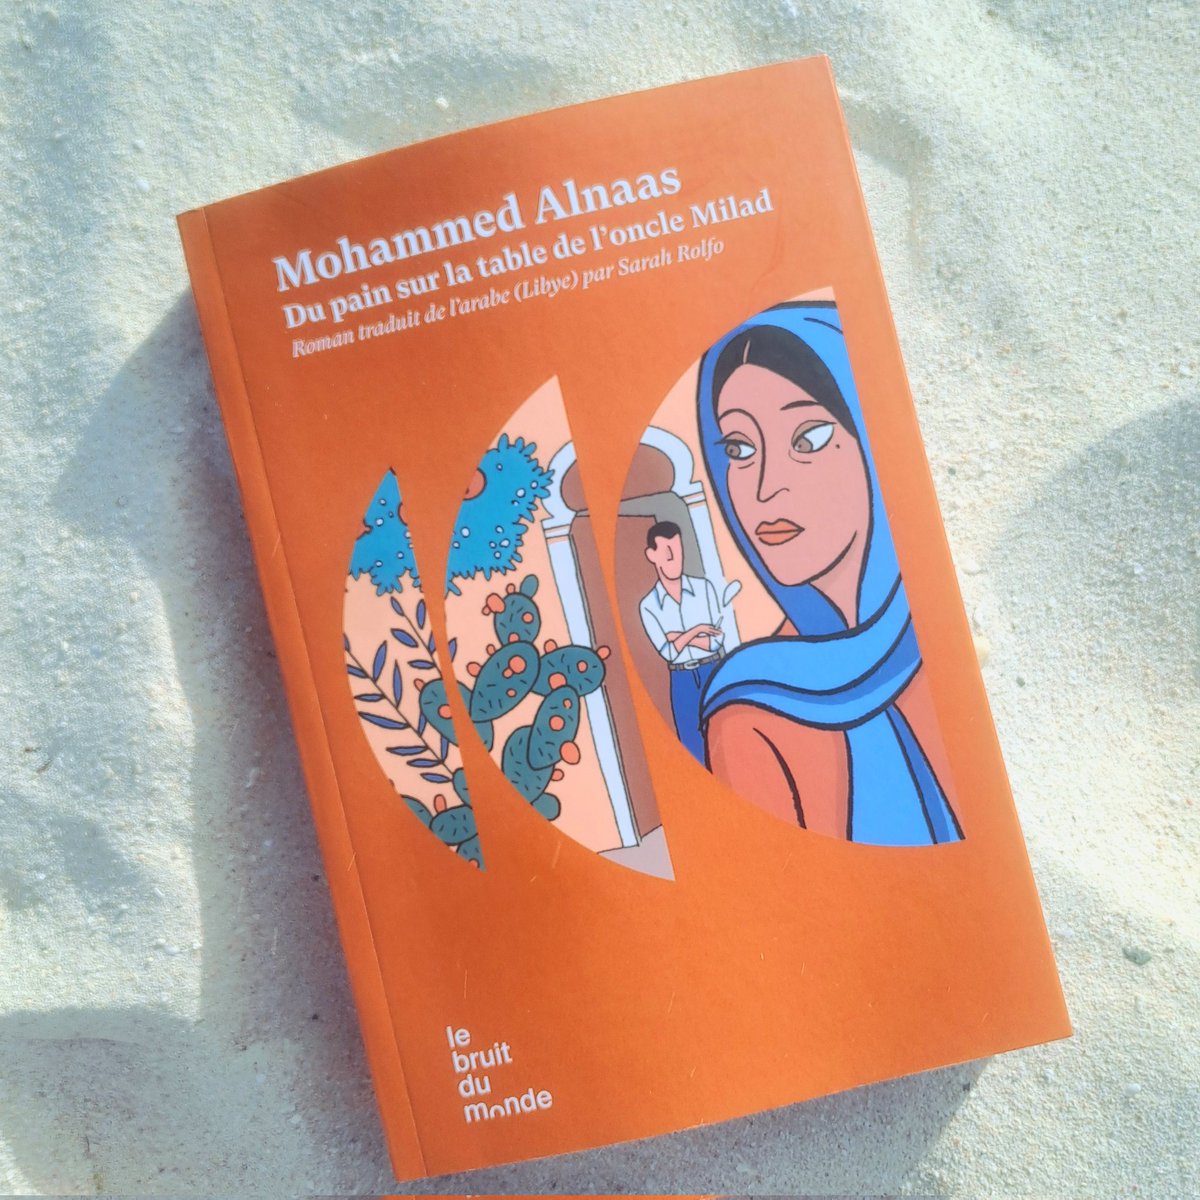 Lauréat du prix international de la fiction arabe en 2022 pour ce livre, Mohammed Alnaas nous offre un portrait détonnant de la Libye contemporaine. Du pain sur la table de l'oncle Milad de Mohammed Alnaas, traduit de l'arabe par @SarahRolfo sera en librairie ce jeudi 2 mai !